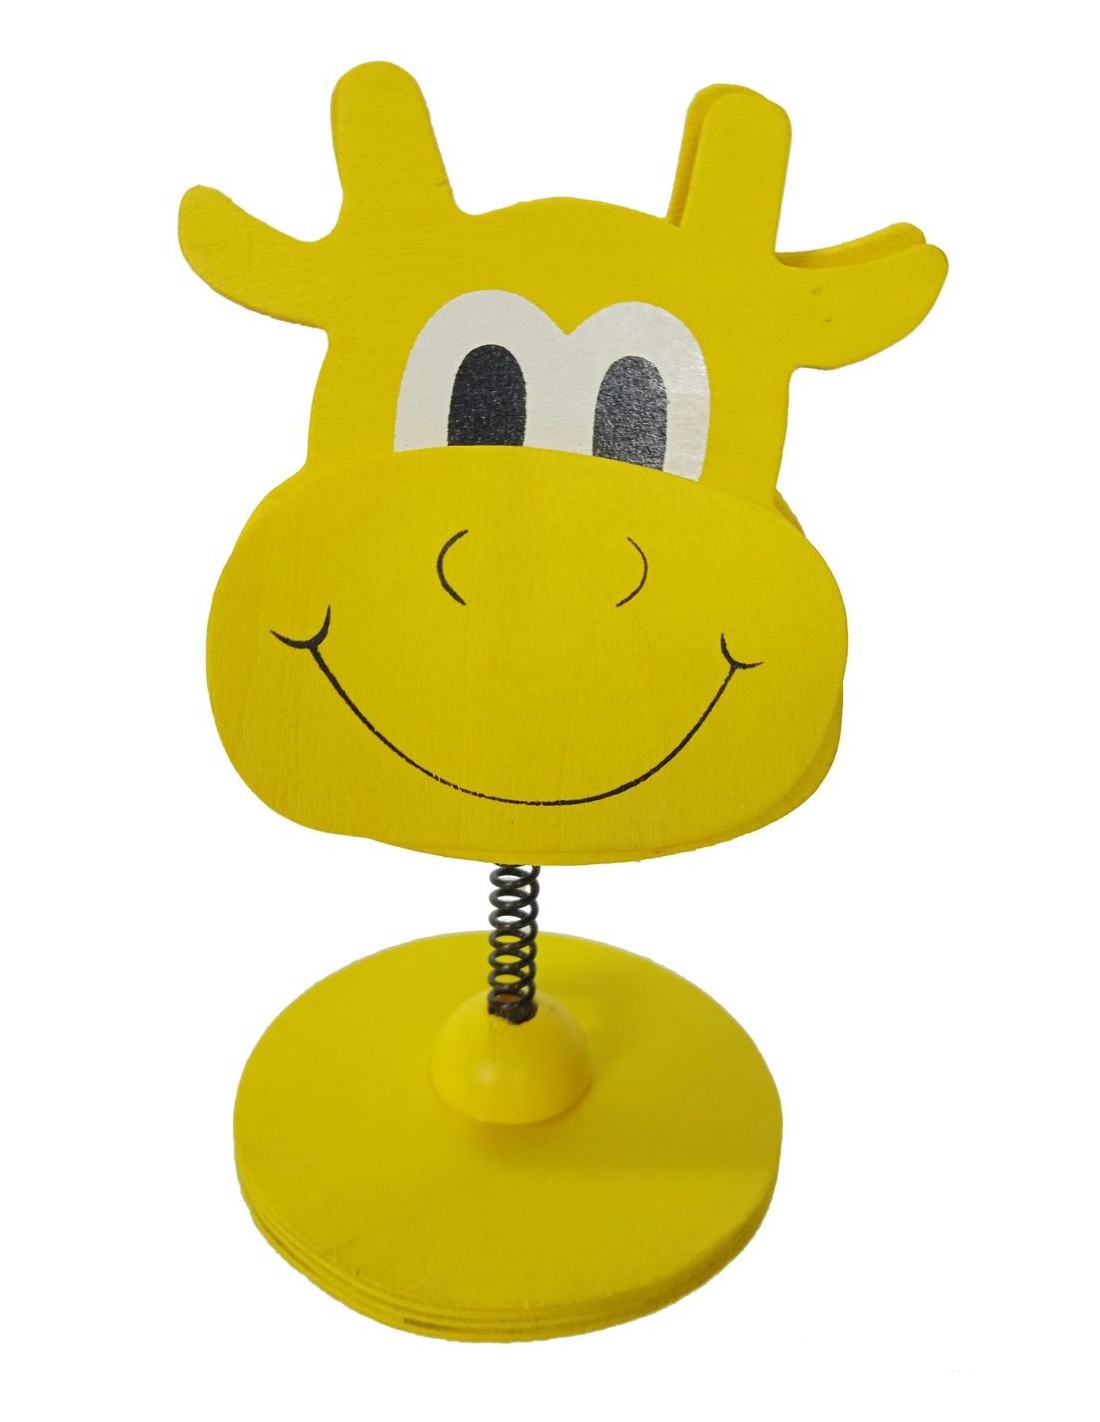 Pinza de madera forma de vaca color amarillo, base de sobremesa, clip con soporte vertical para tarjetas.